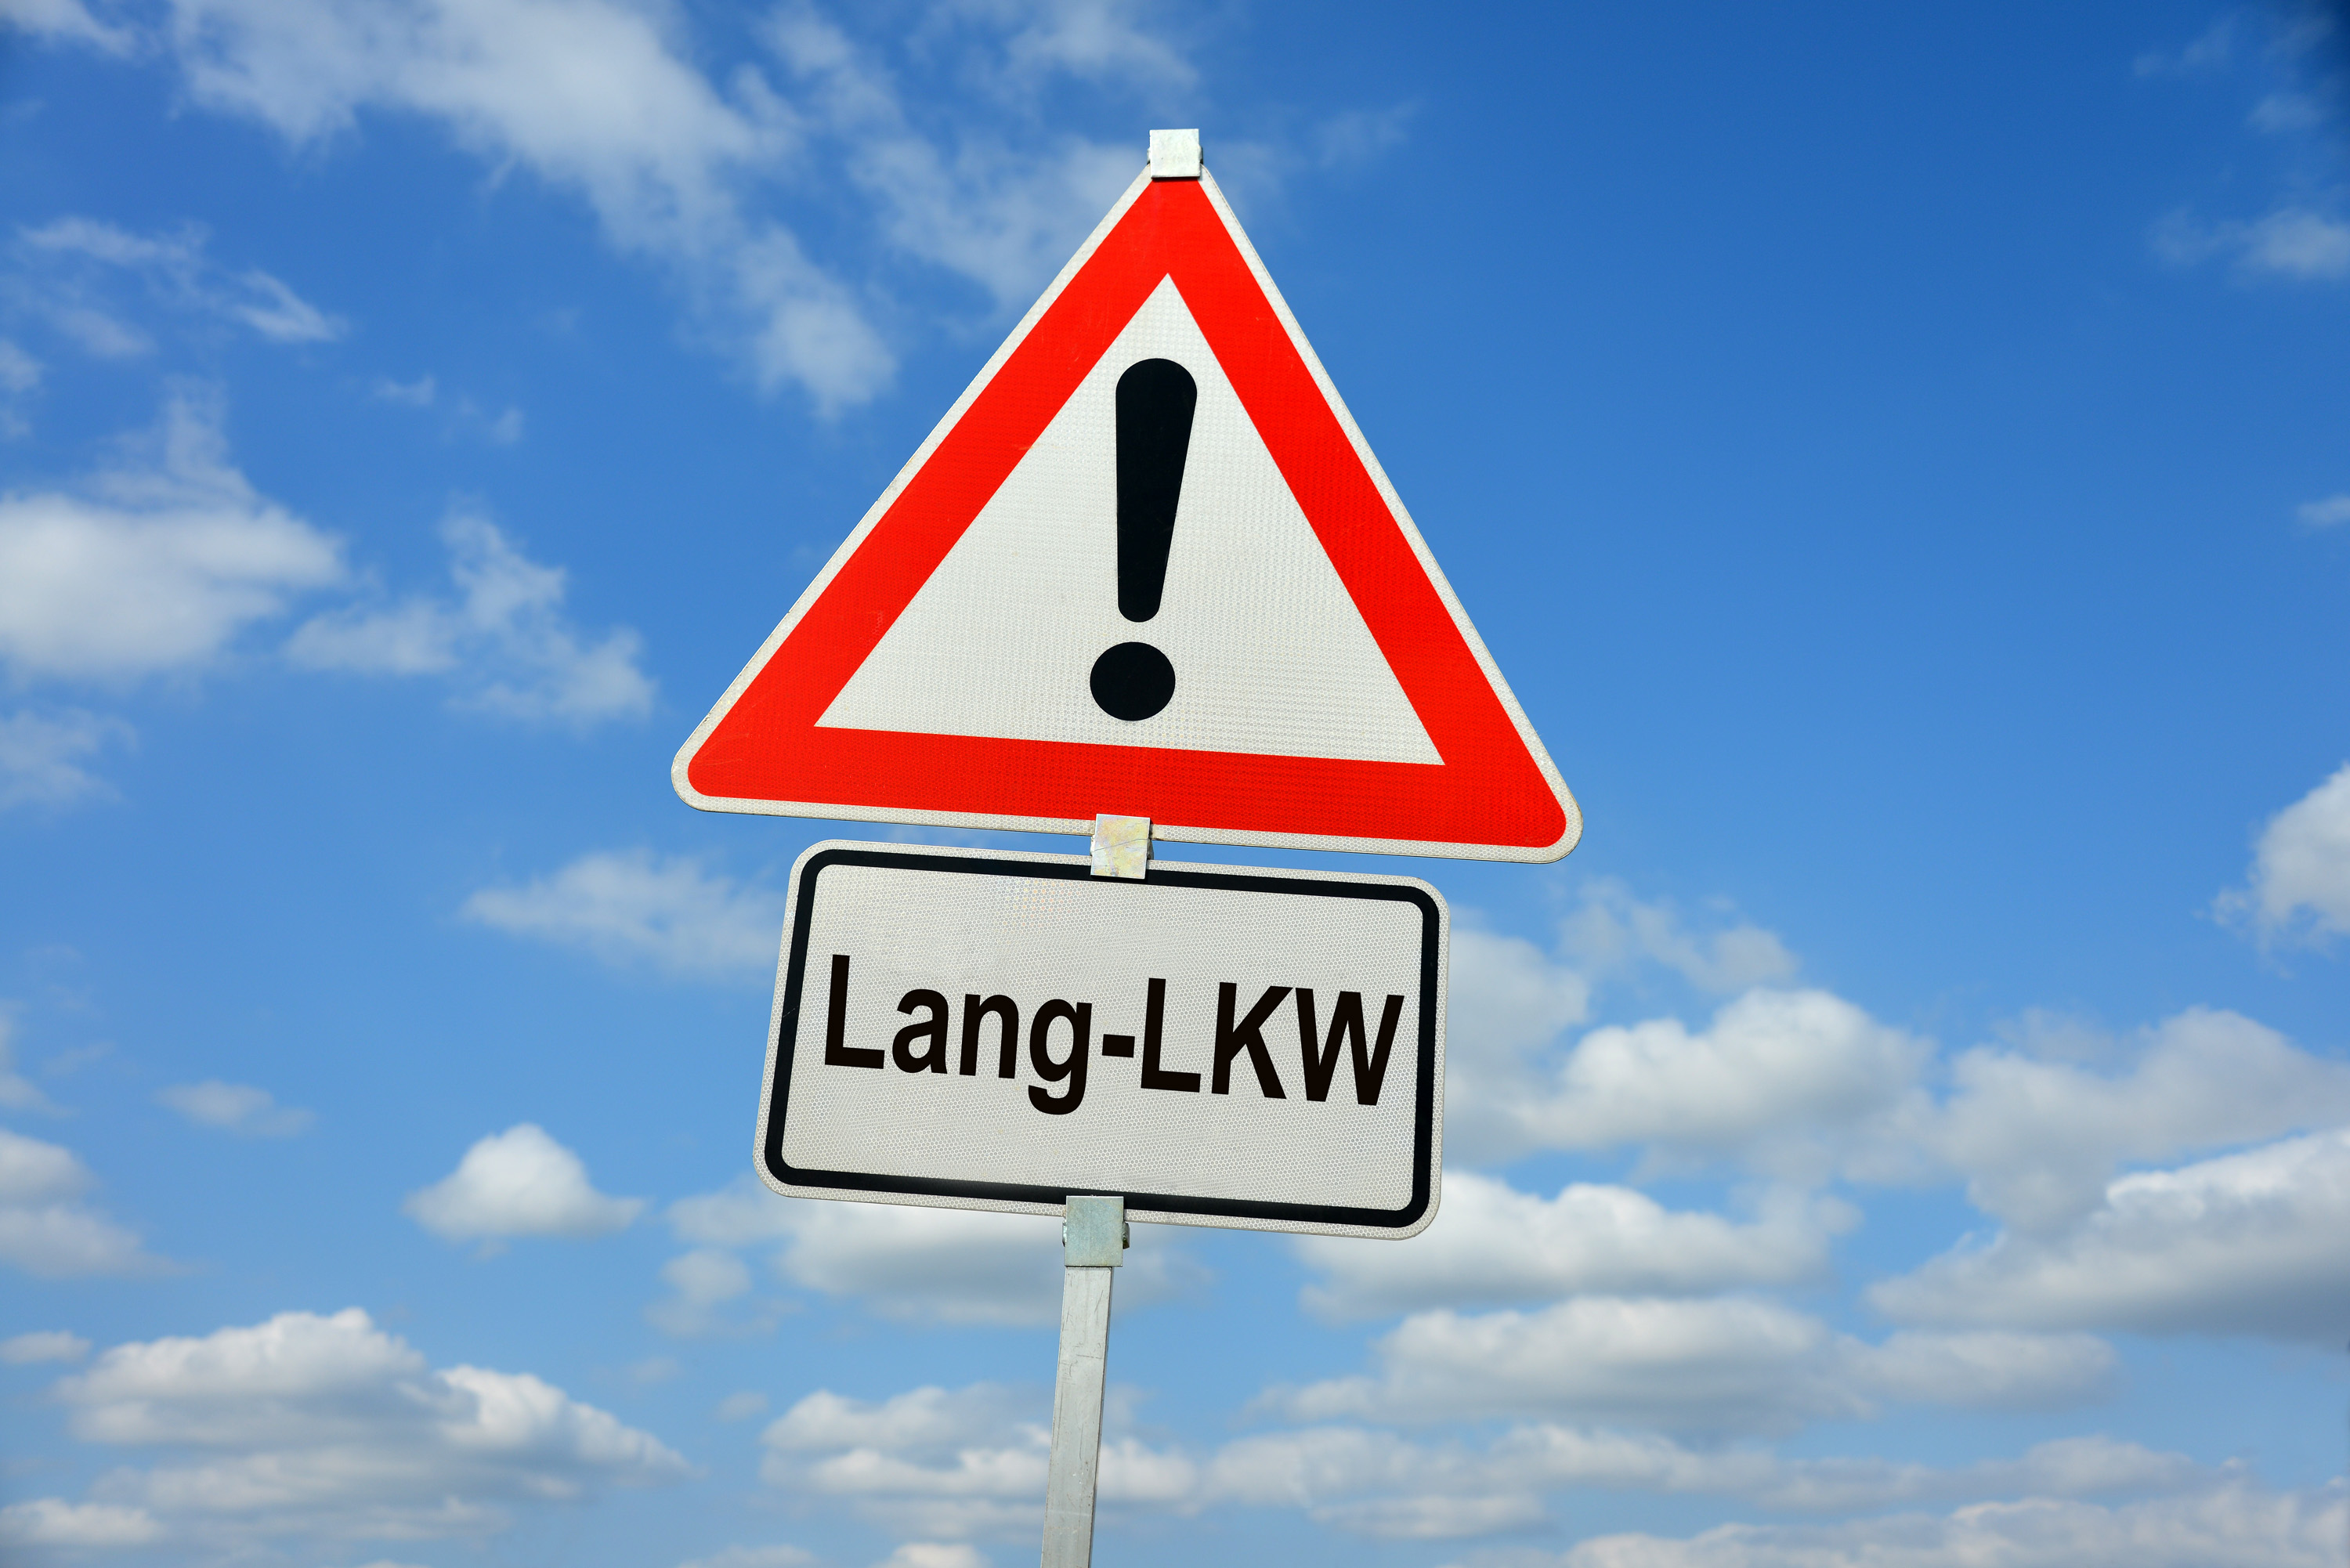 Lang-LKW